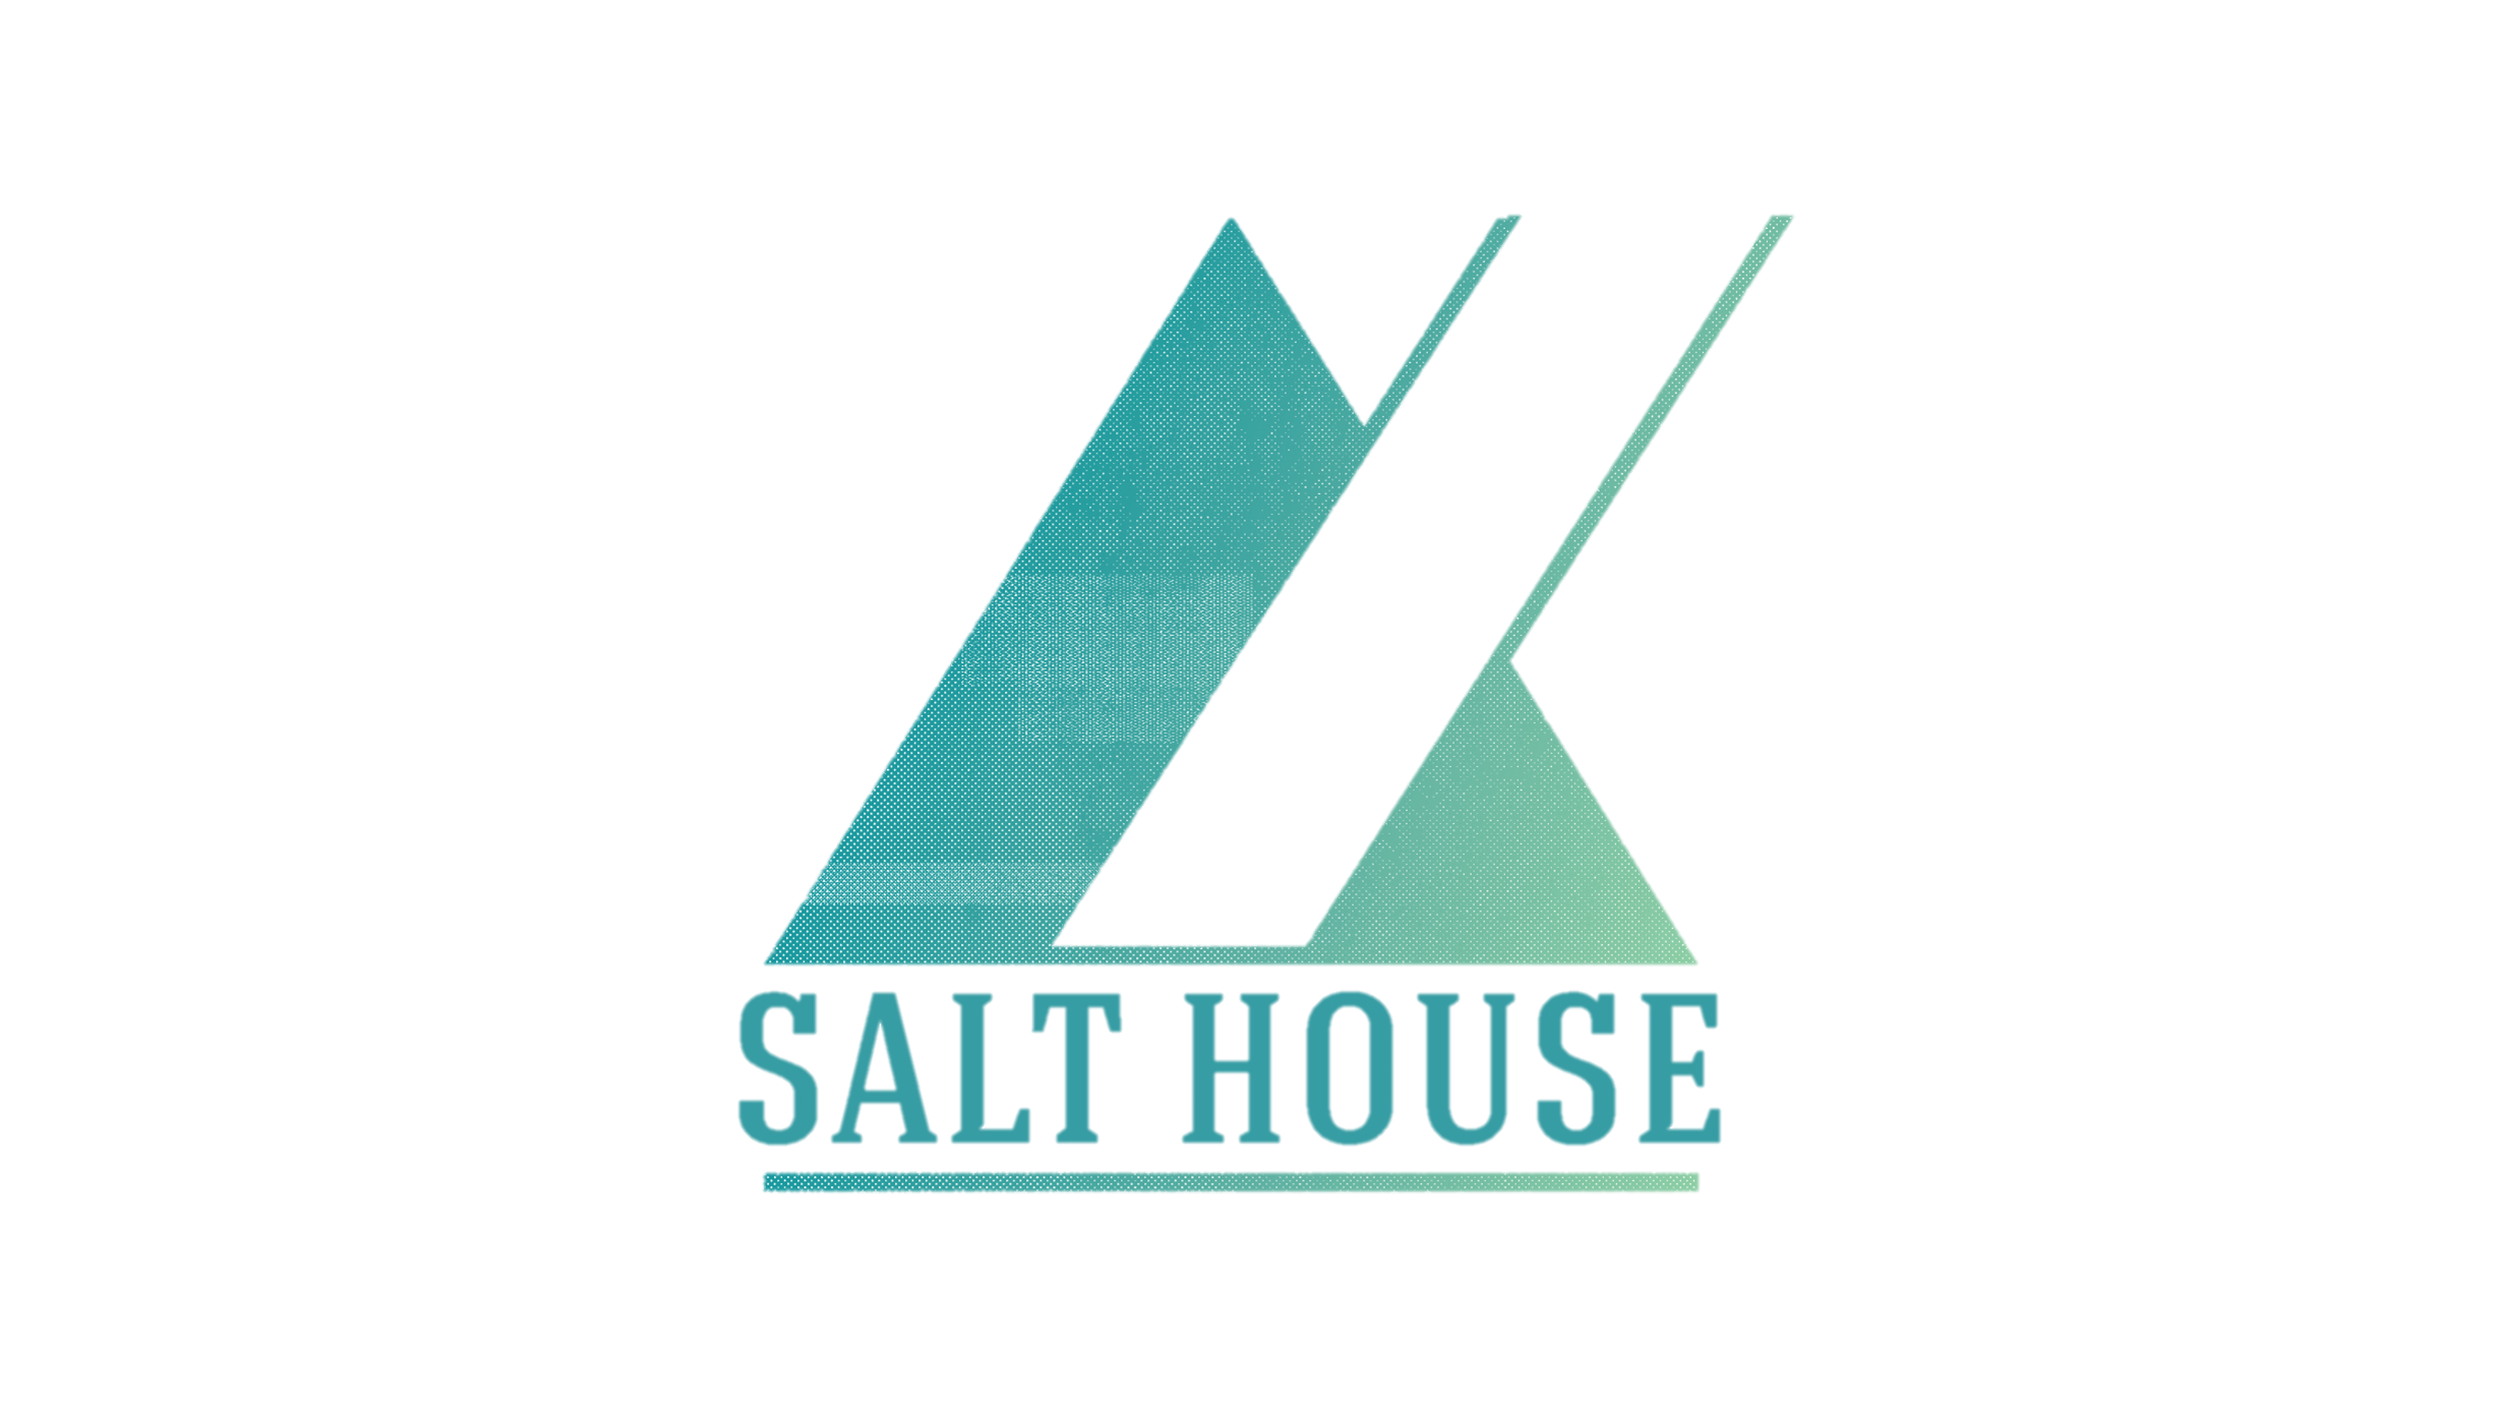 Csponsor_SaltHouse_logo_16x9.png